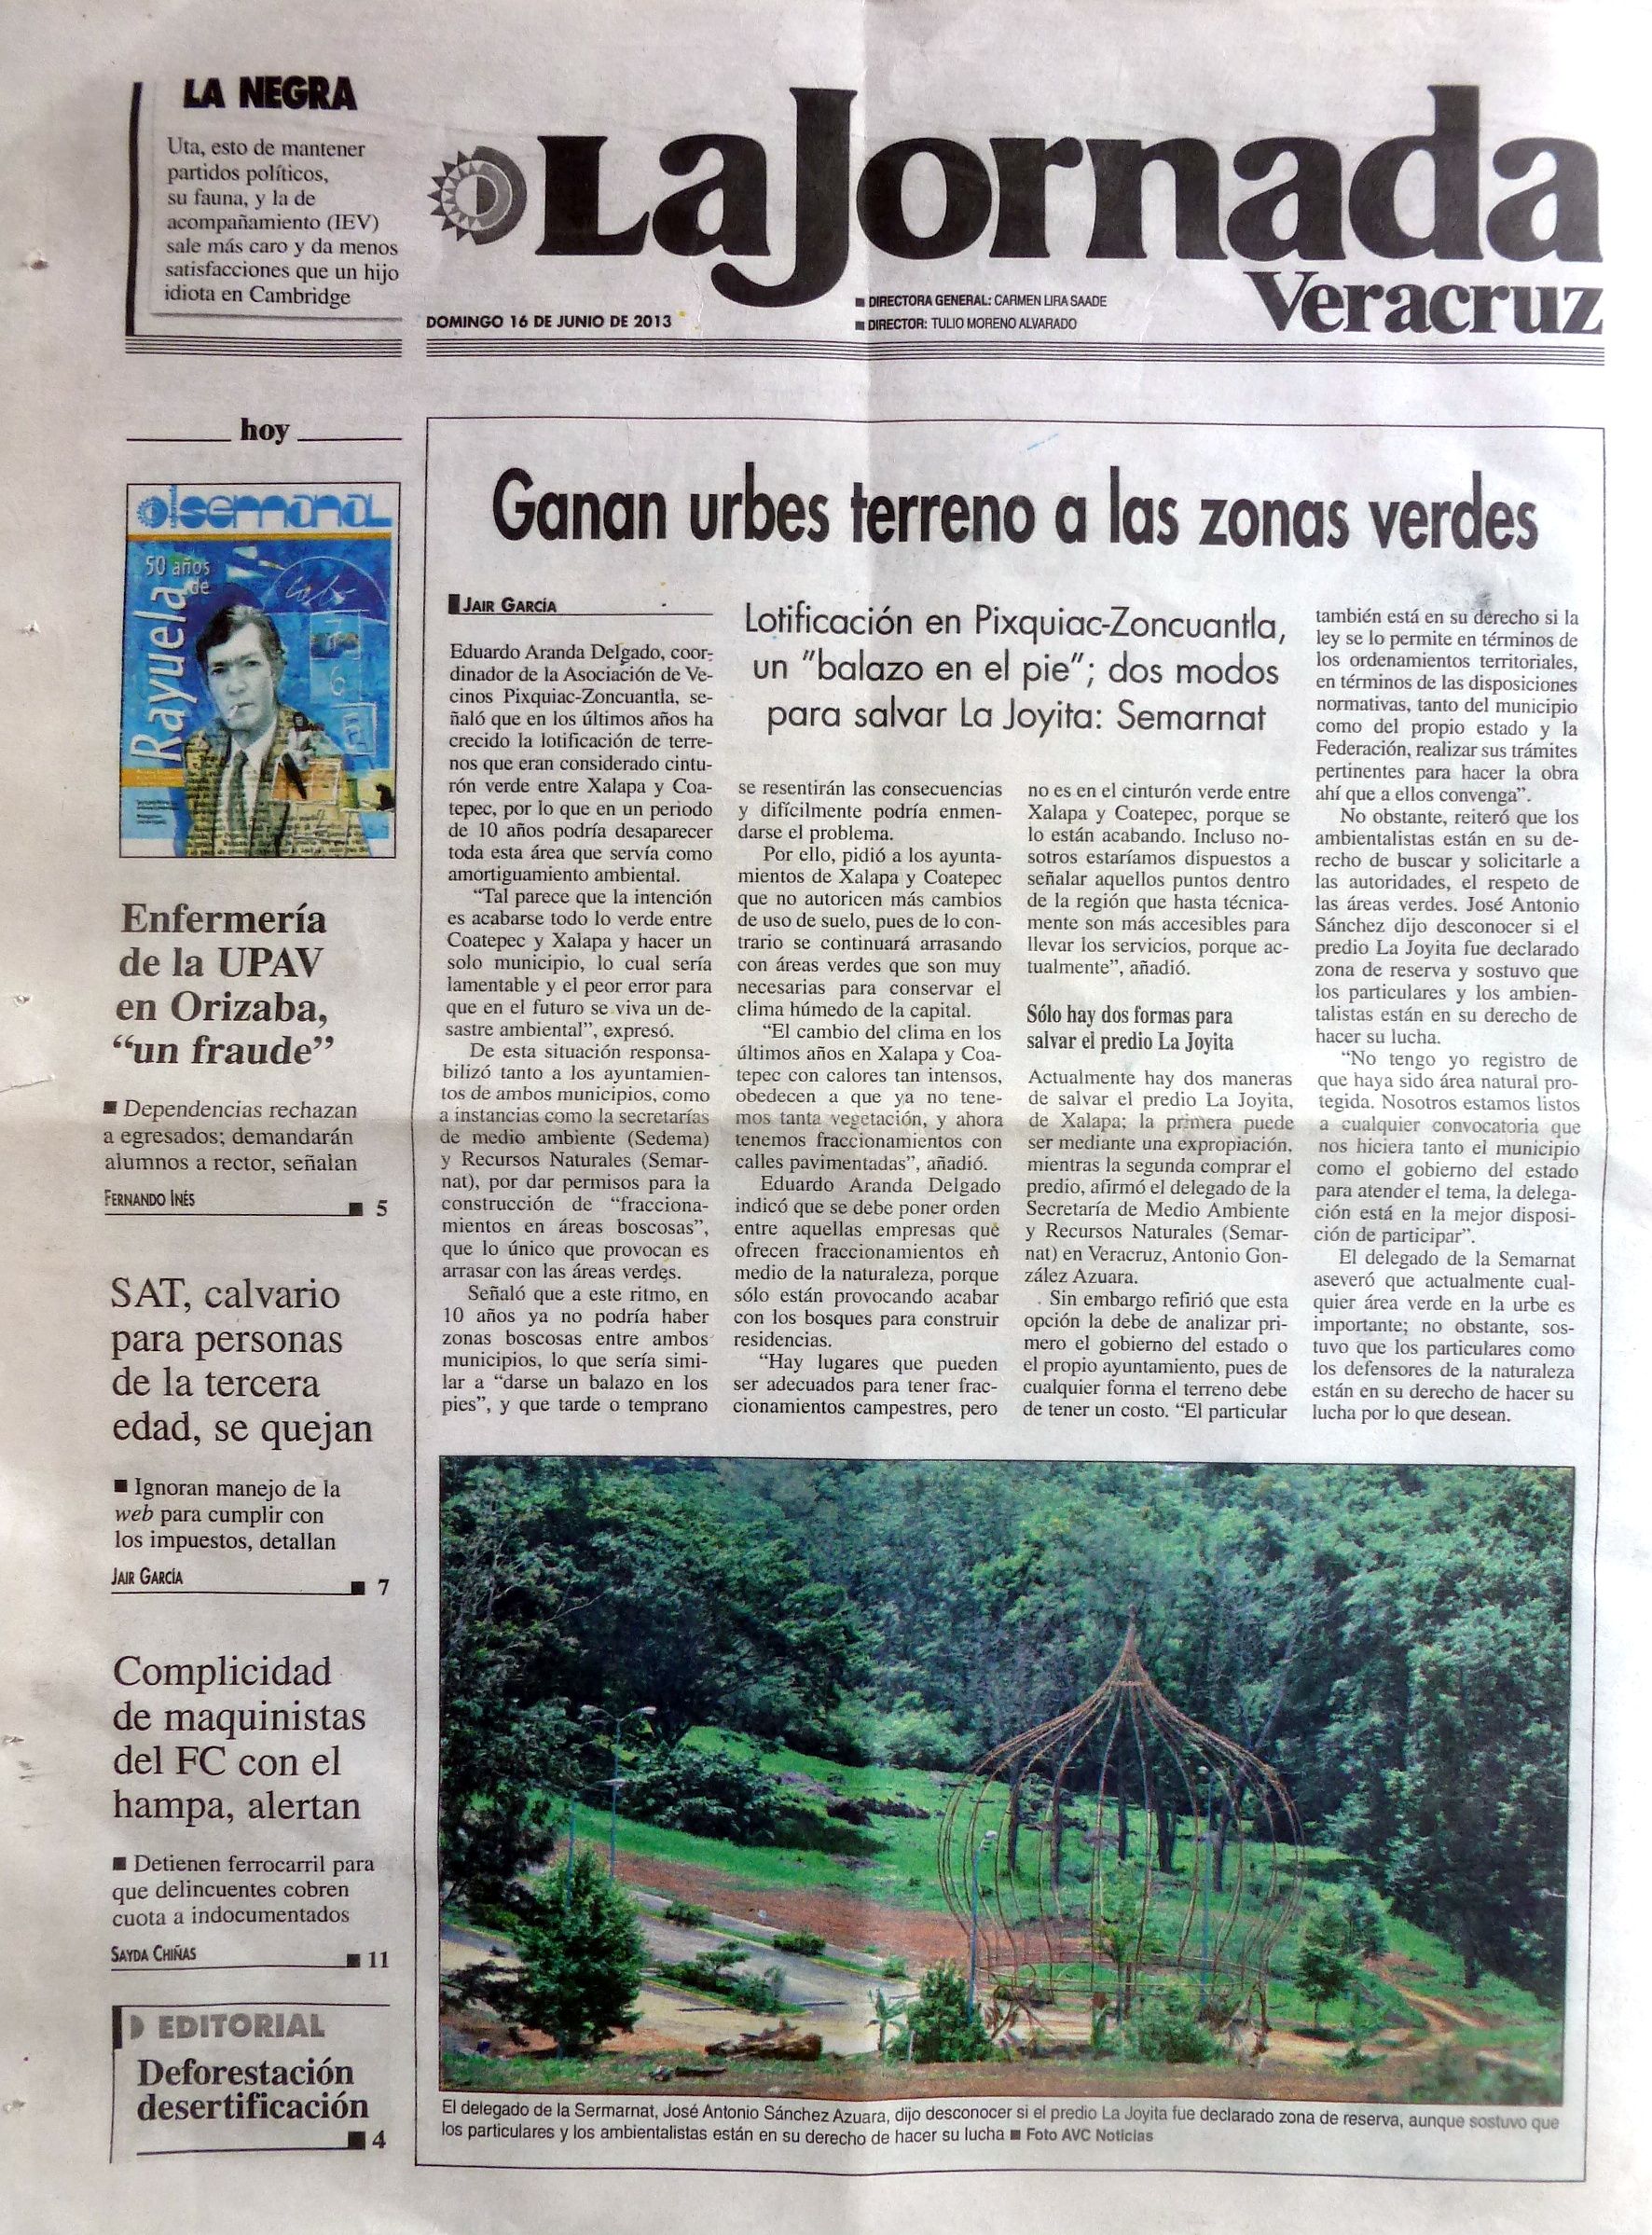 La Jornada Areas verdes 16 Junio 2013